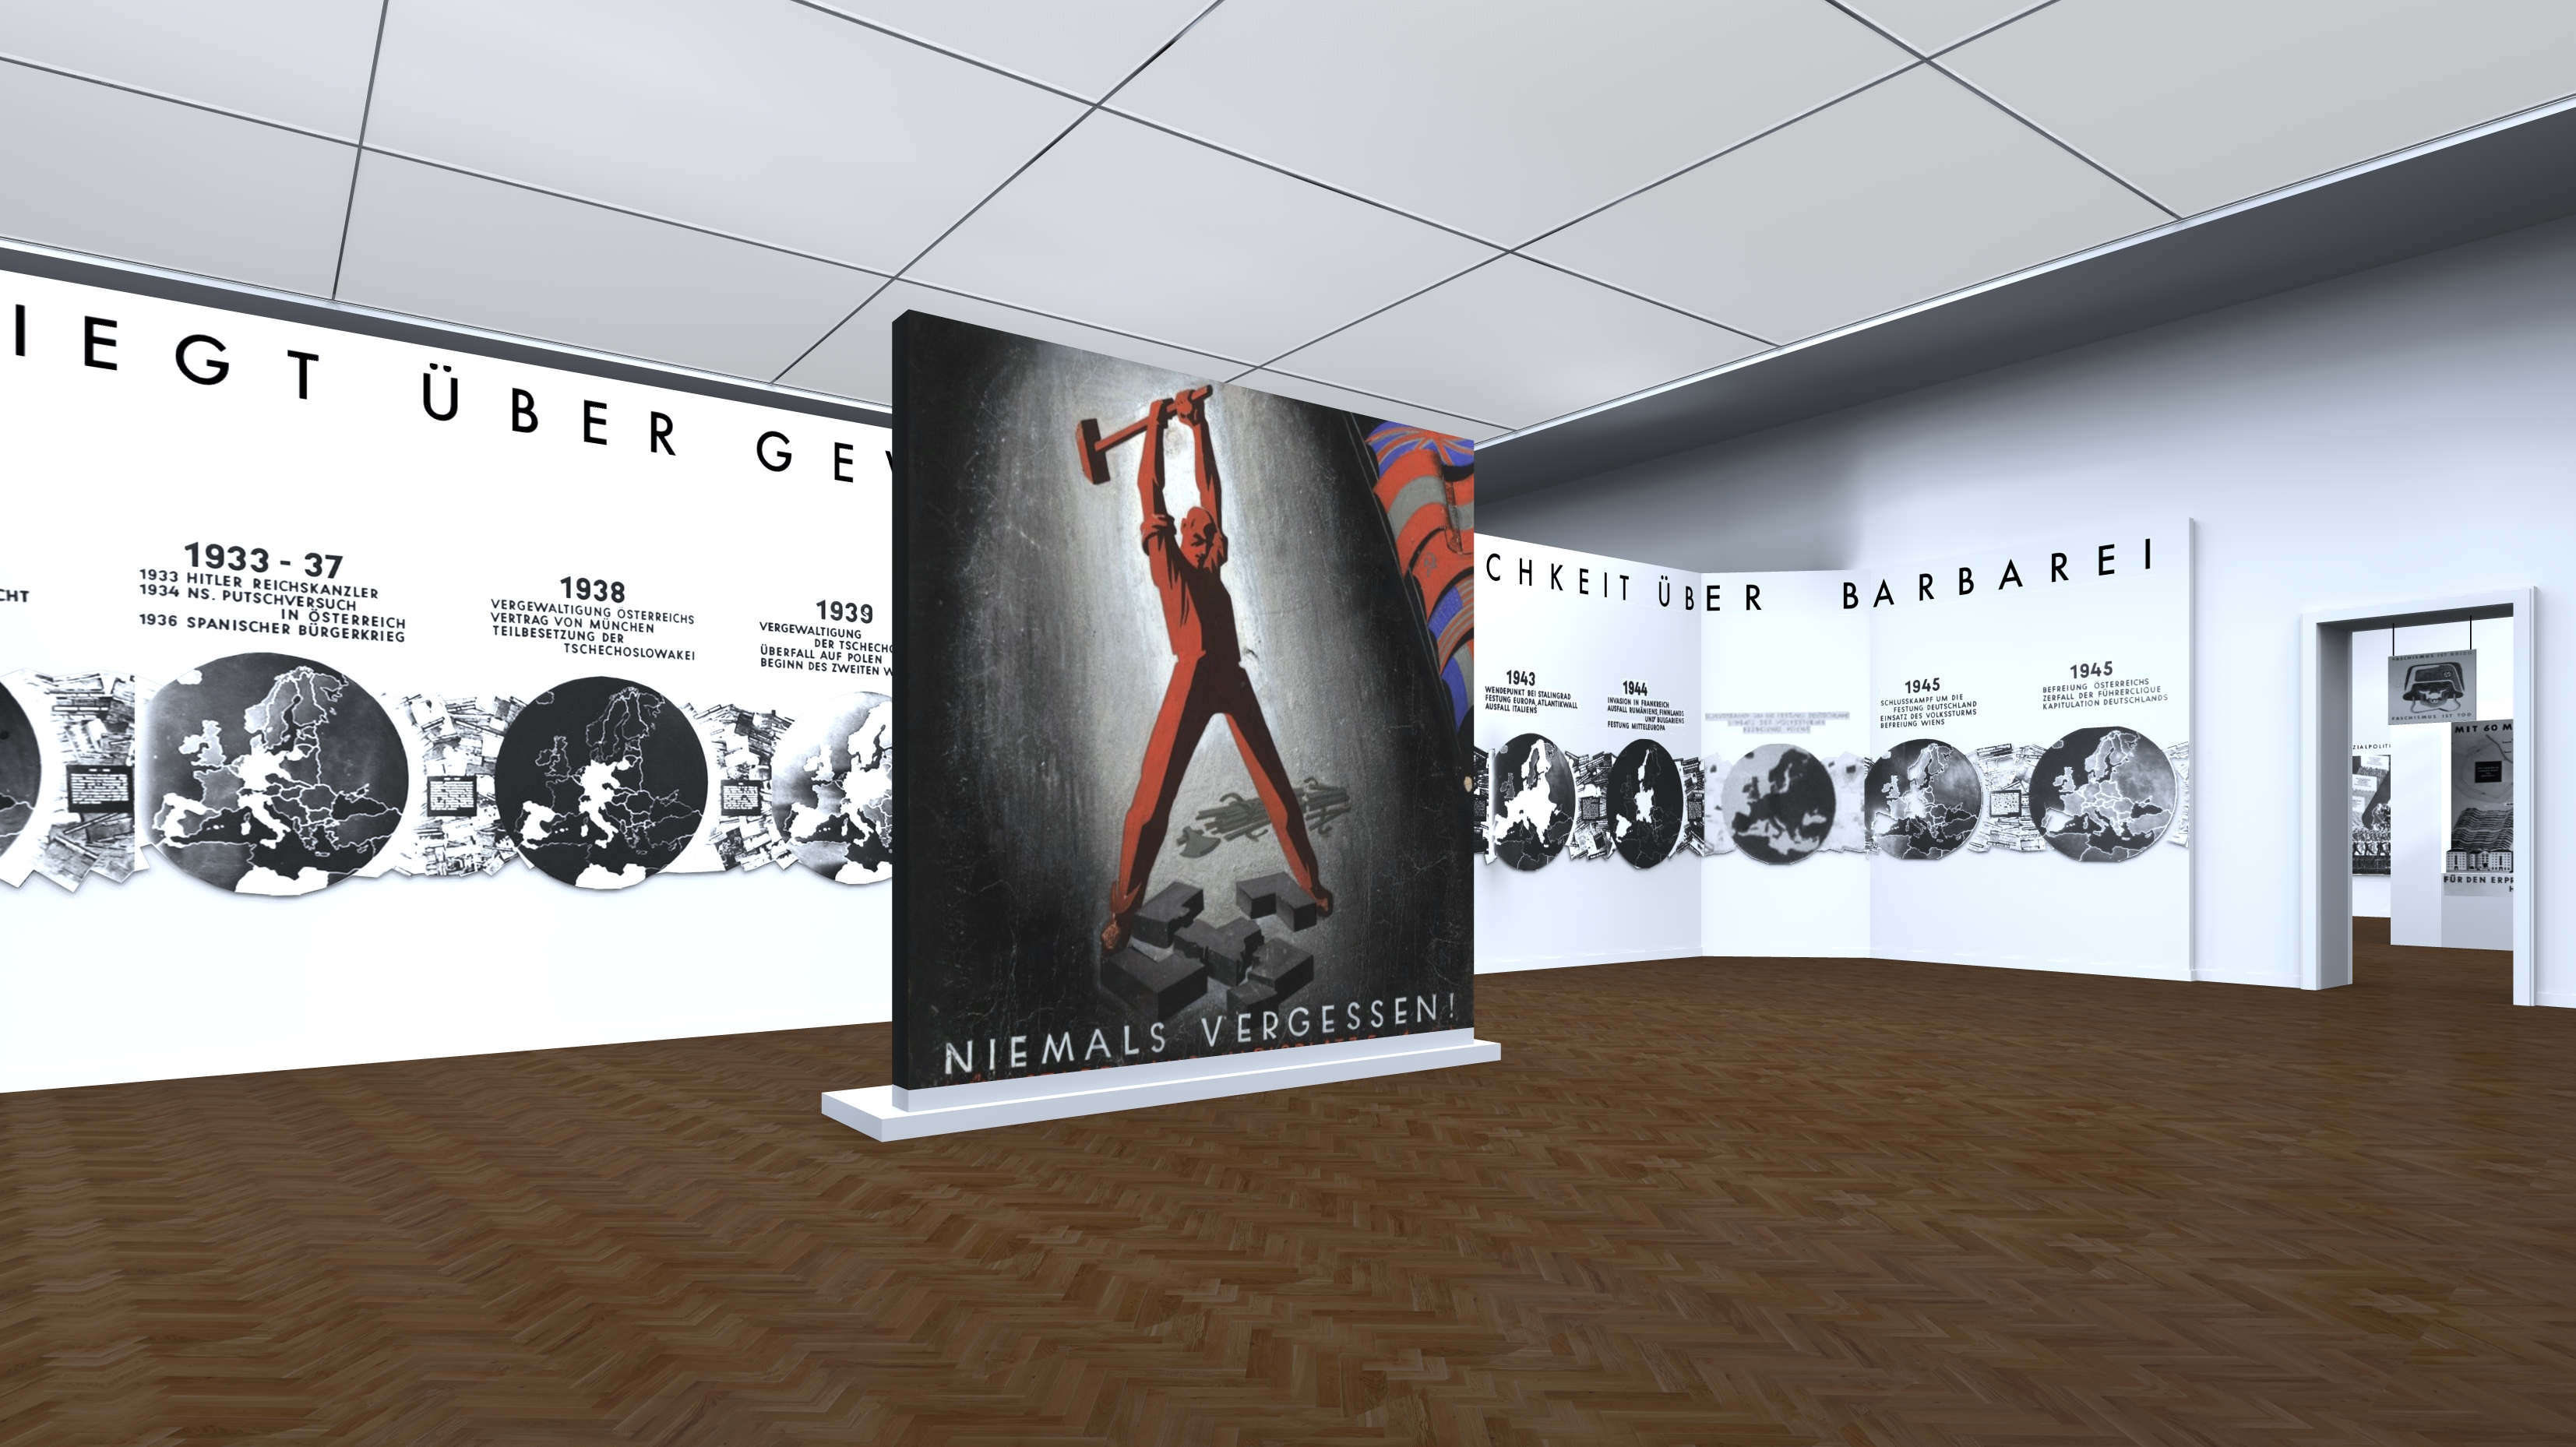 Virtuelle Ausstellungsrekonstruktion von 1946/47